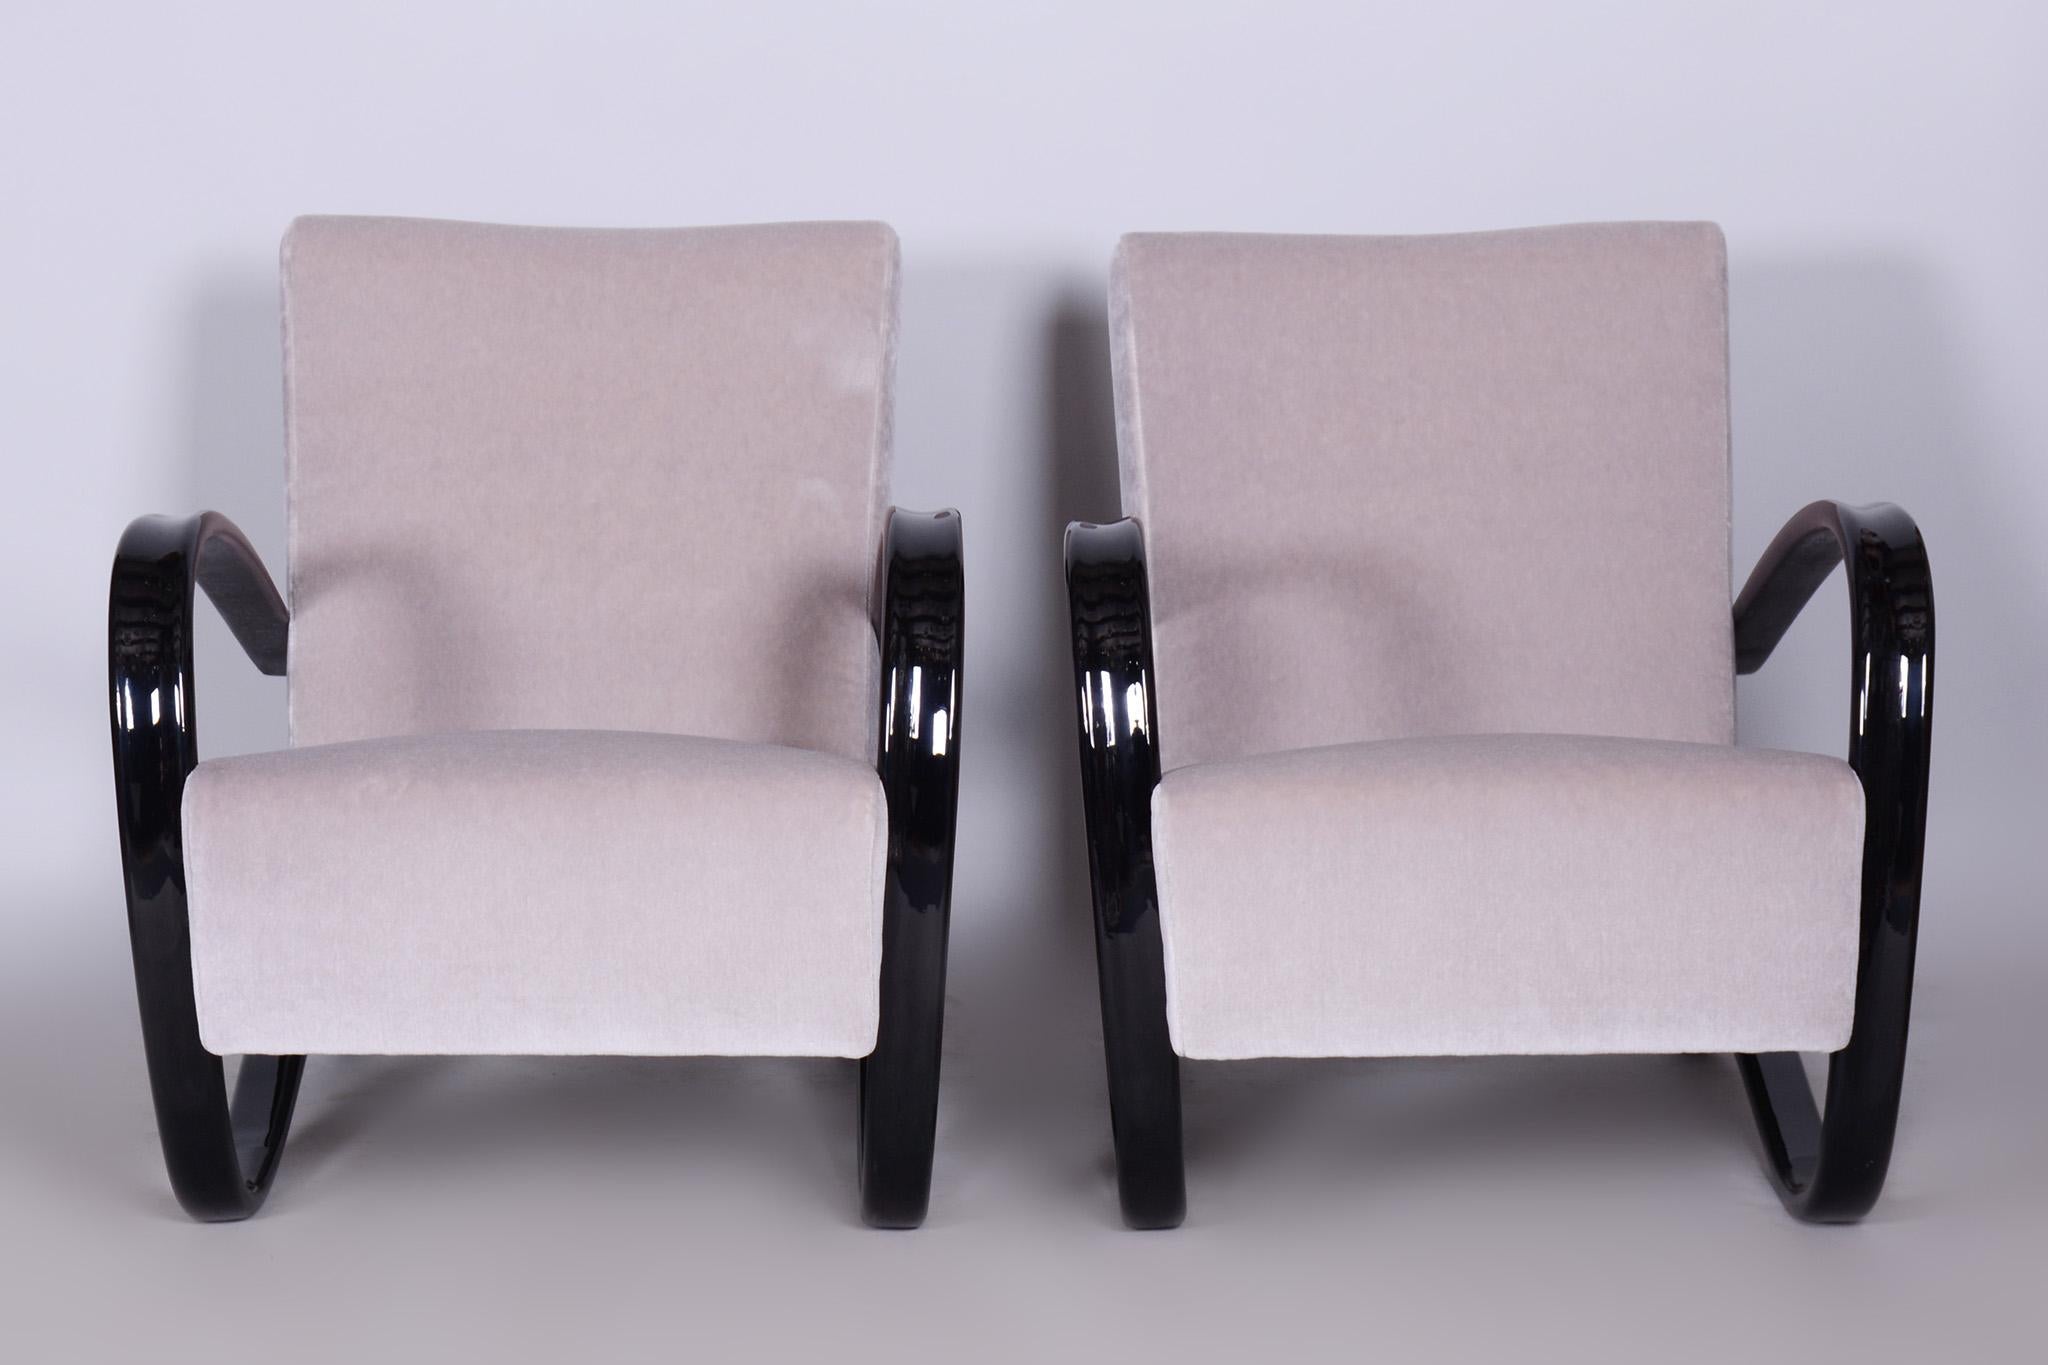 Ein Paar H-269 Sessel, entworfen von Halabala für UP Zavody, einen bekannten Möbelhersteller und -händler mit Sitz in Brünn, Tschechoslowakei. 

In den letzten Jahren sind diese Stühle immer seltener geworden und werden von Innenarchitekten immer